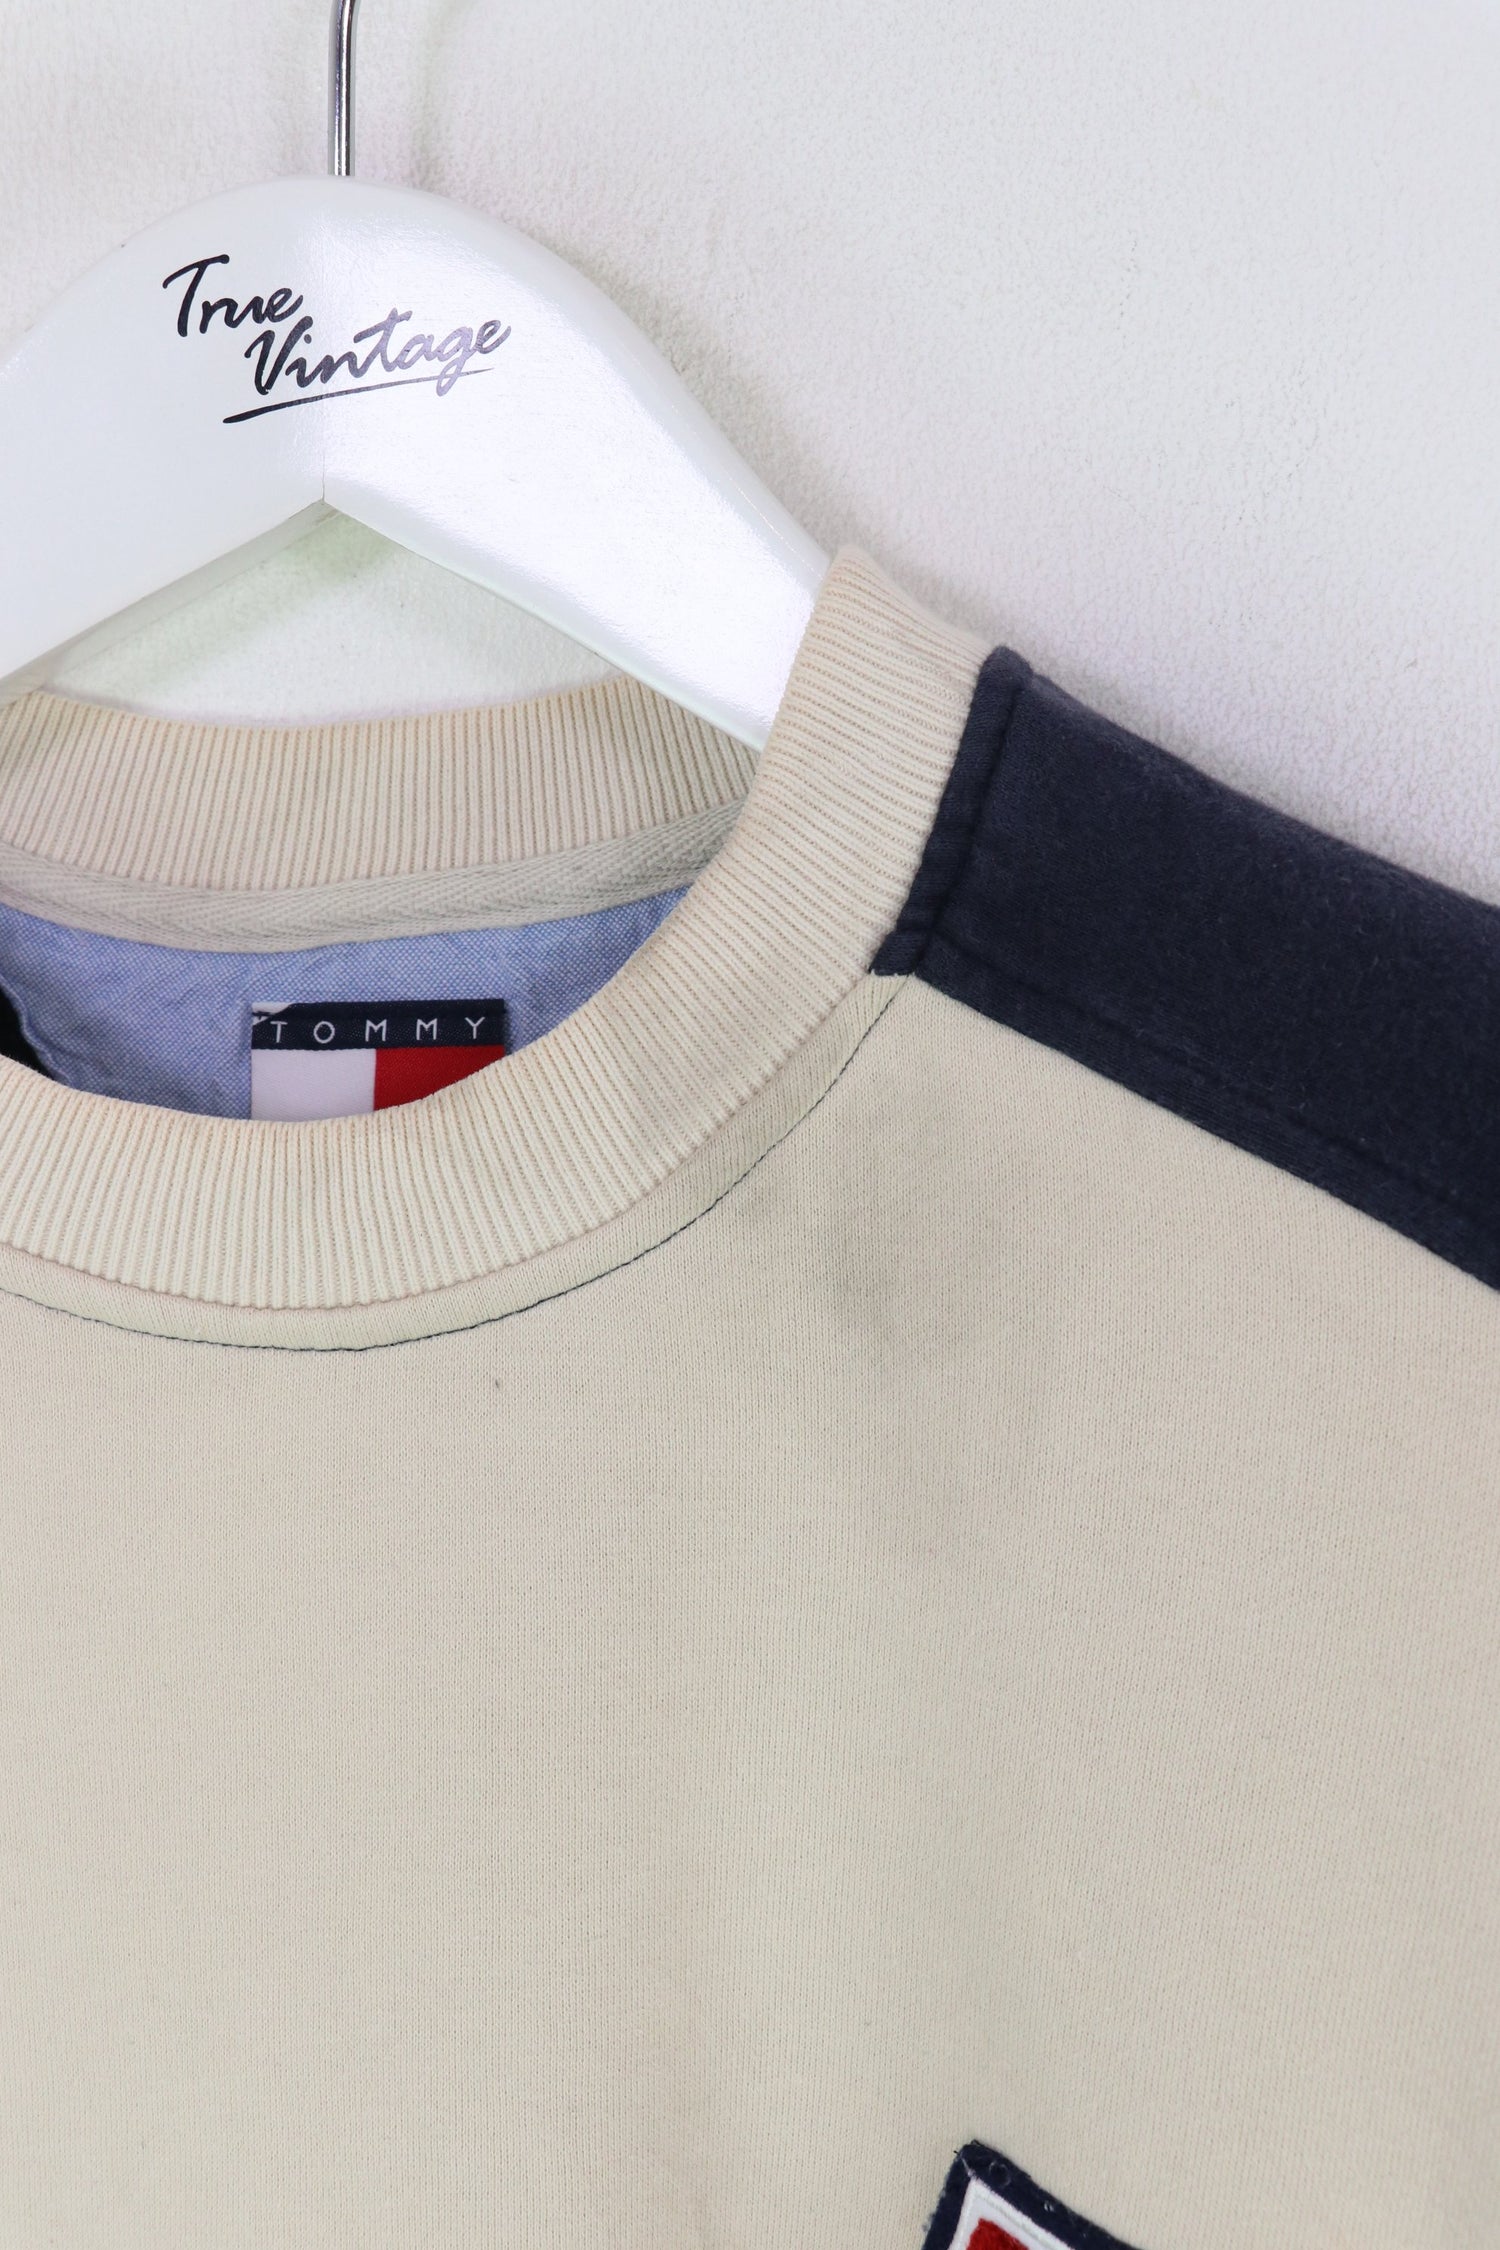 Tommy Hilfiger Sweatshirt Cream/Navy XL